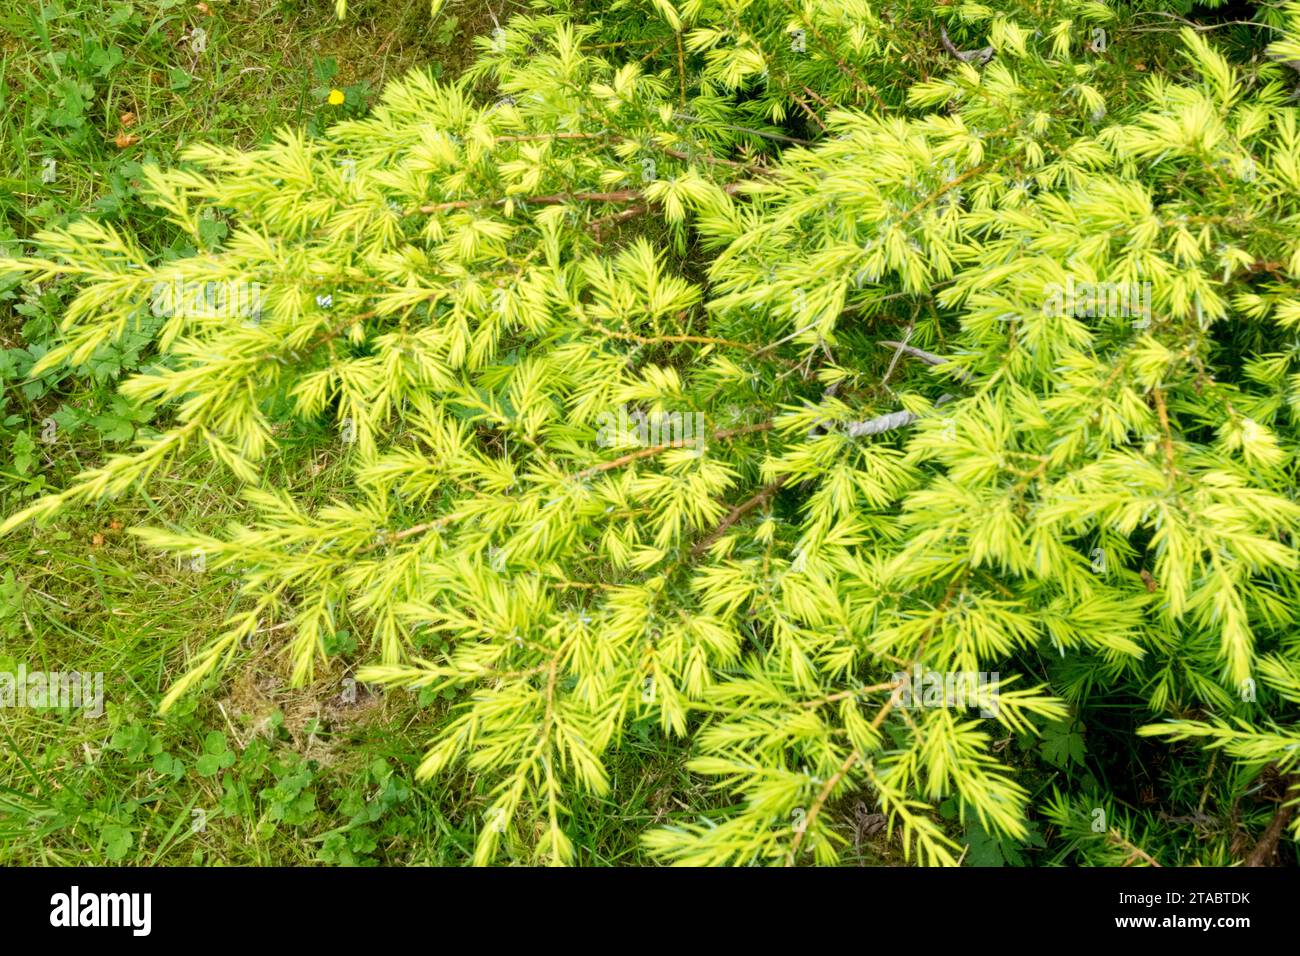 Golden Yellow, Common juniper, Juniperus communis 'Depressa Aurea' Stock Photo